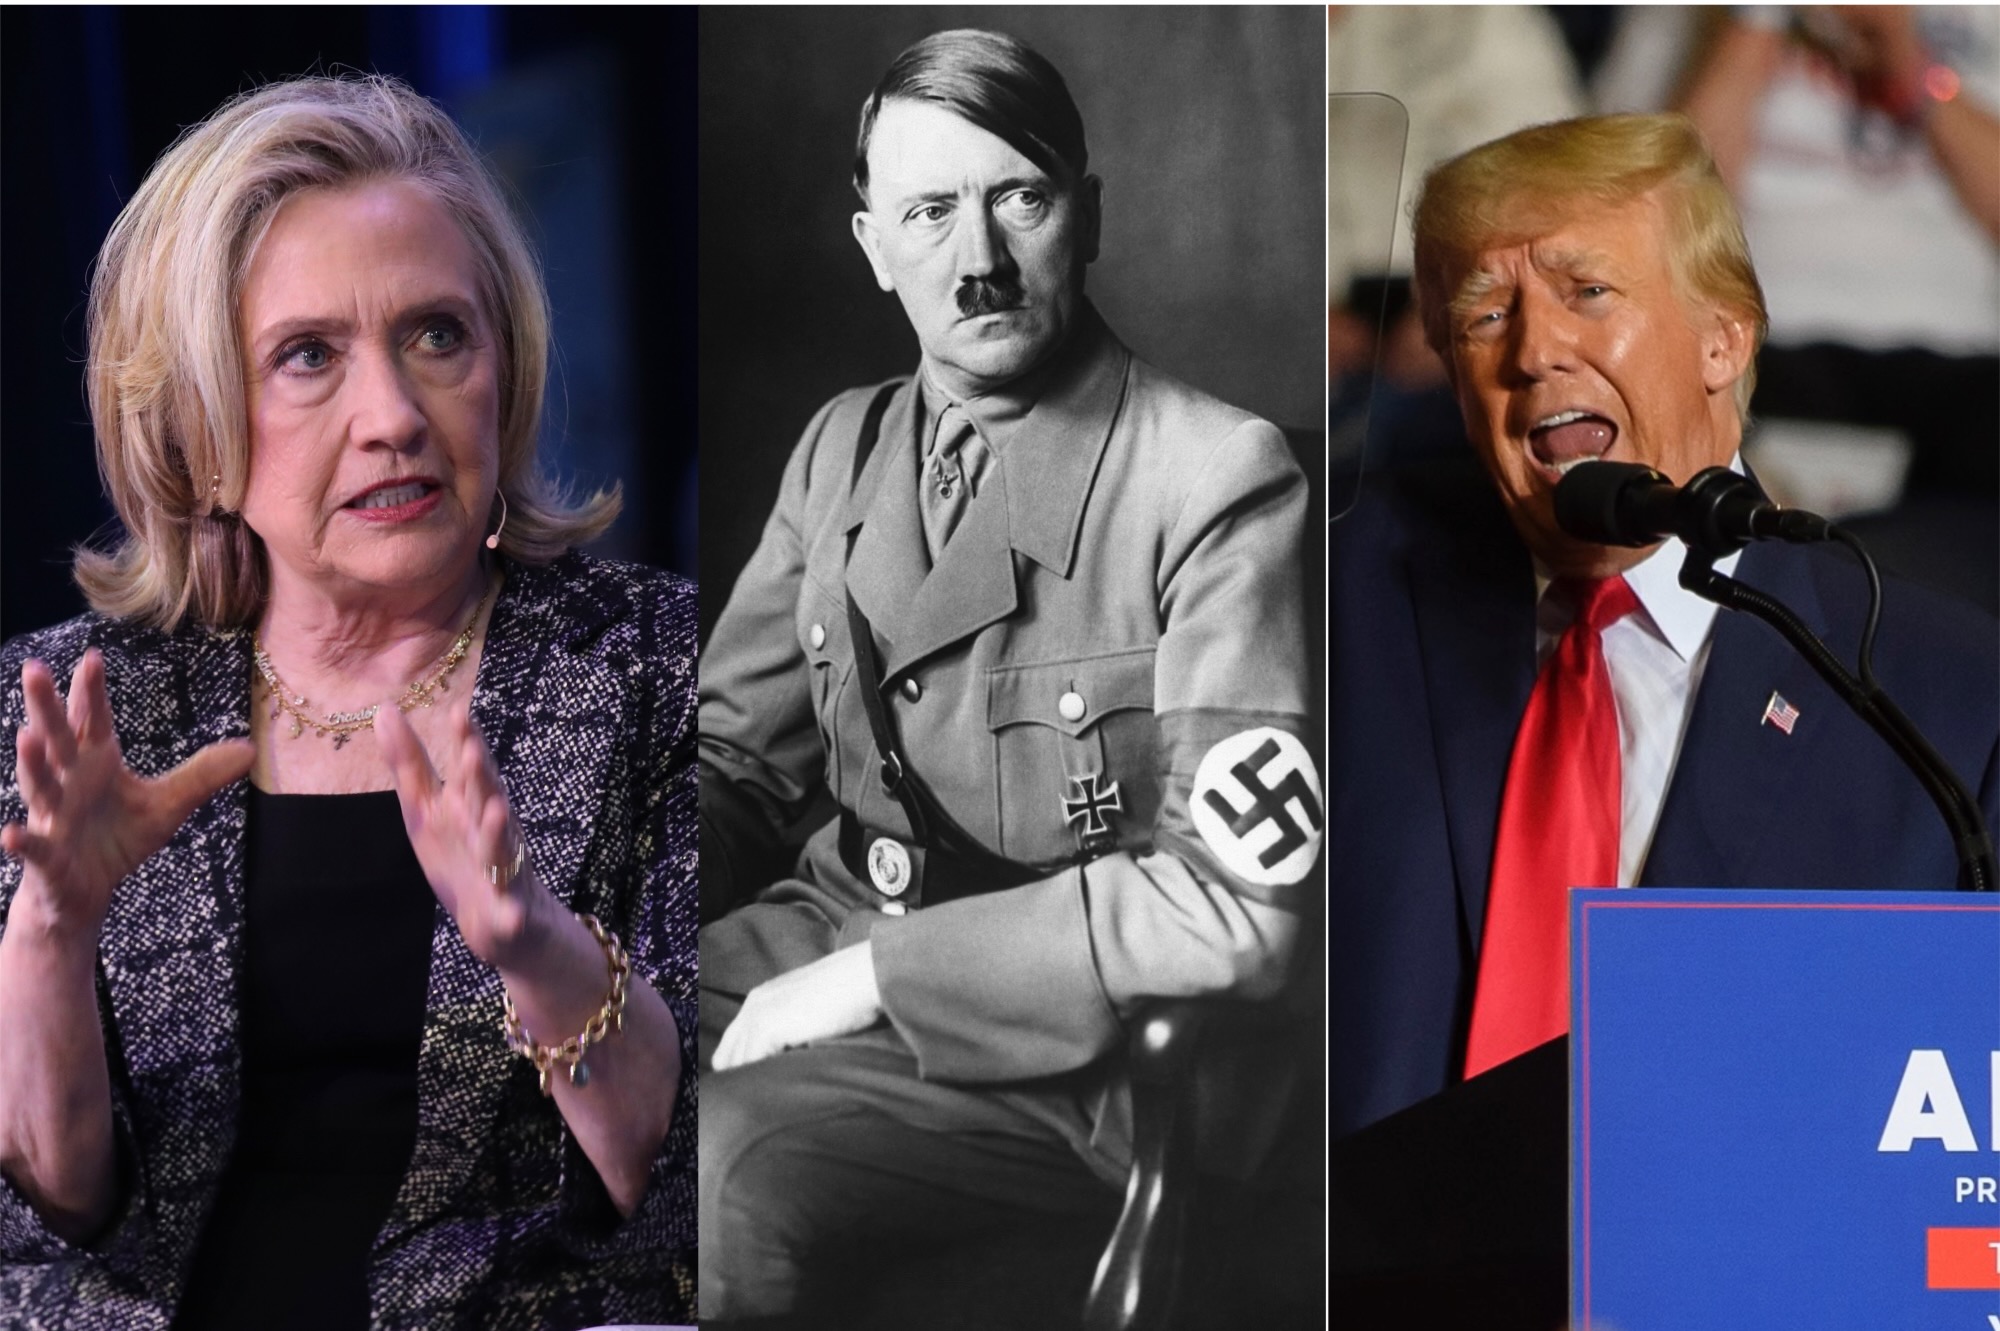 Hillary Clinton compares Donald Trump to Adolf Hitler